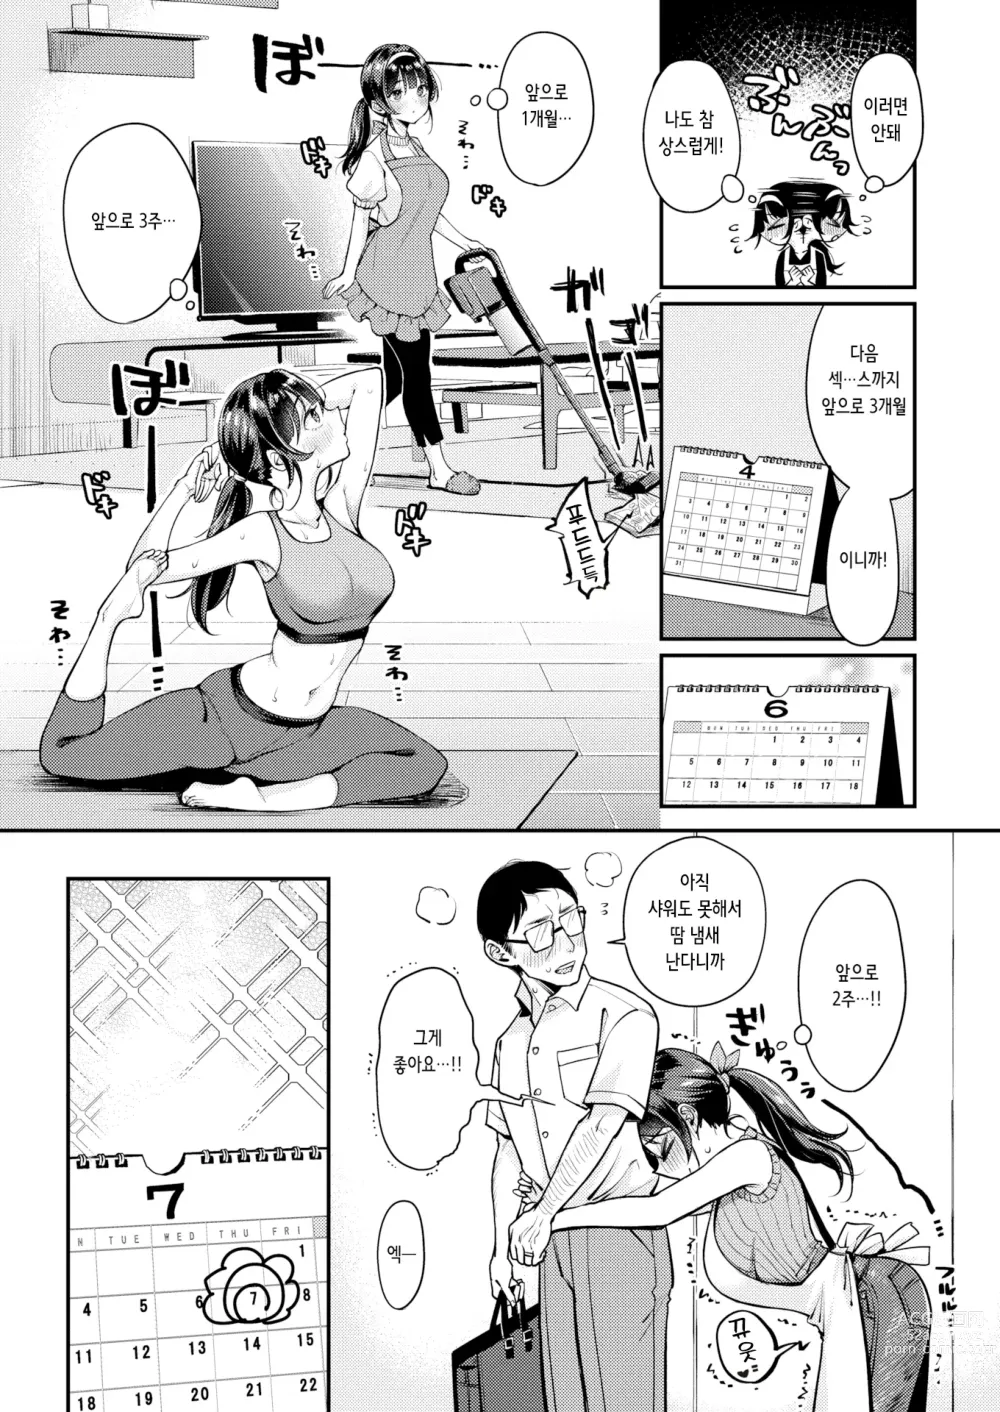 Page 5 of manga 오리히메 쨩과 히코보시 씨